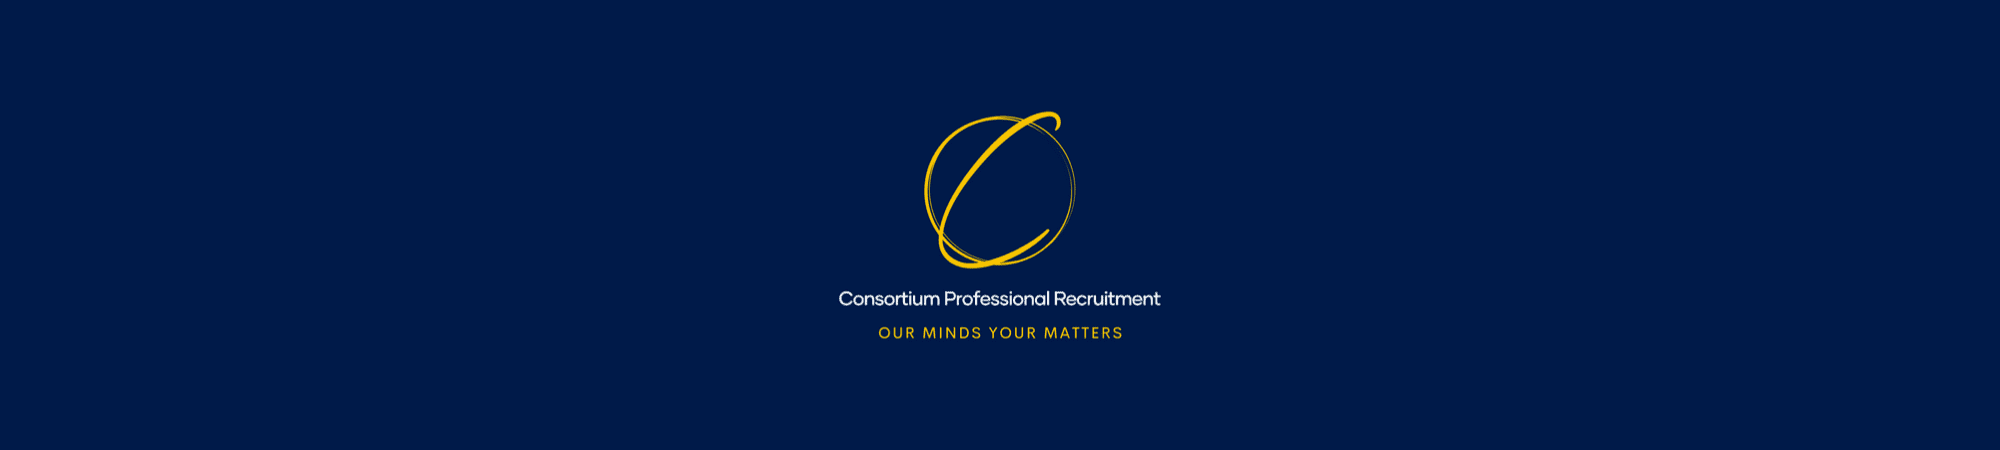 Consortium Professional Recruitment